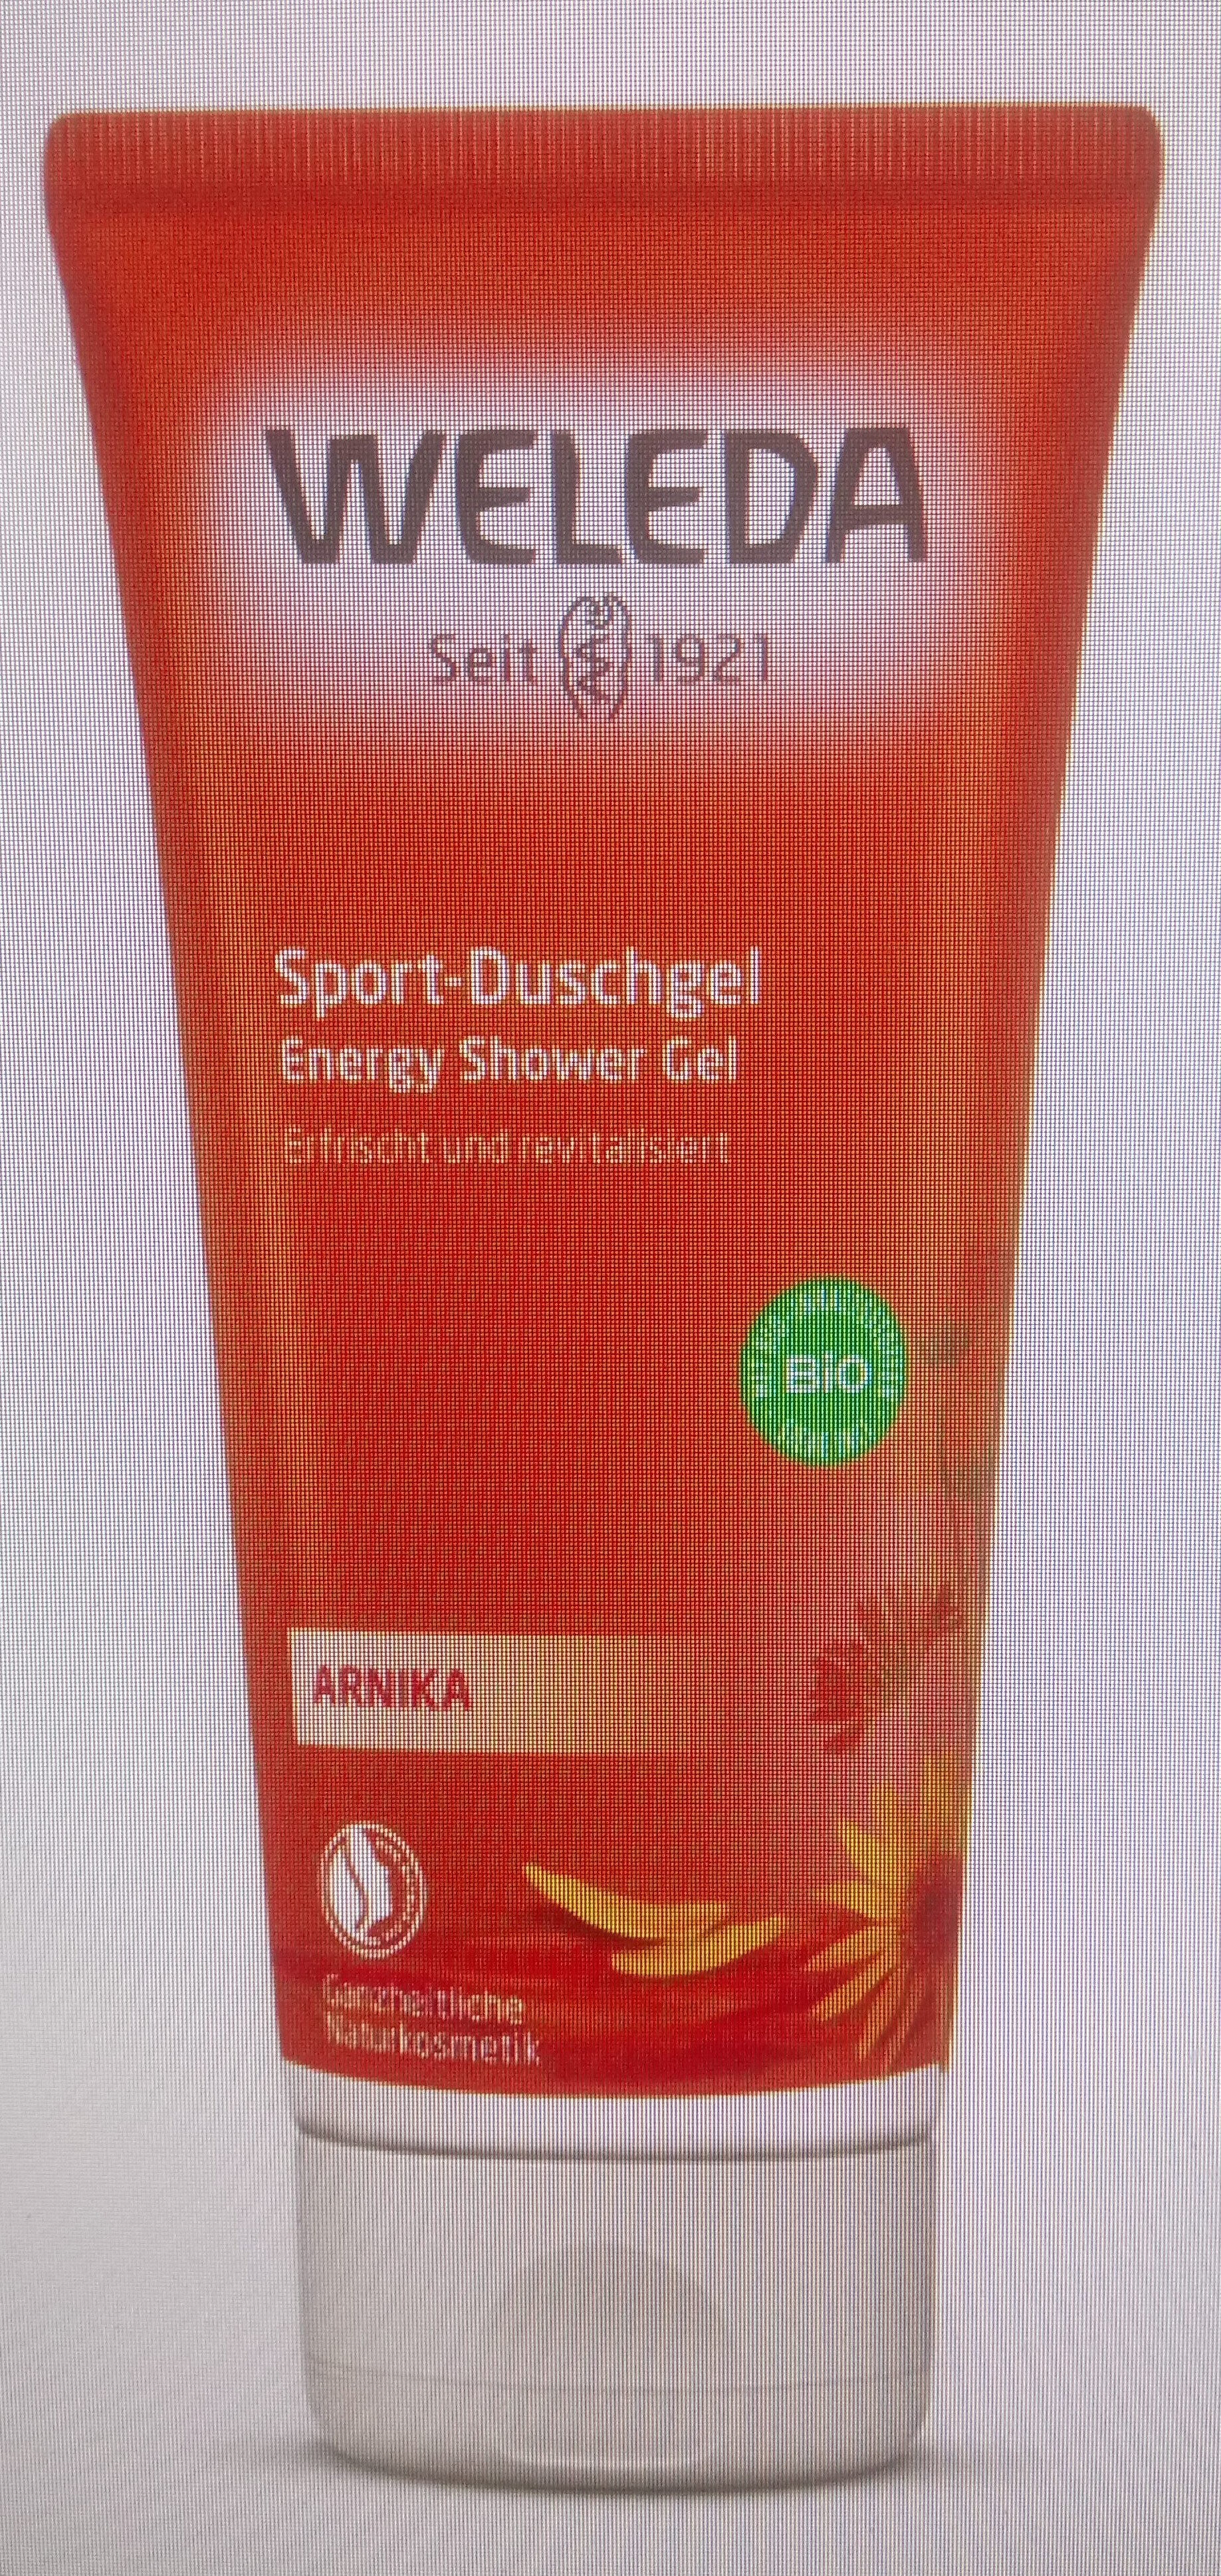 Sport-Duschgel - Product - de